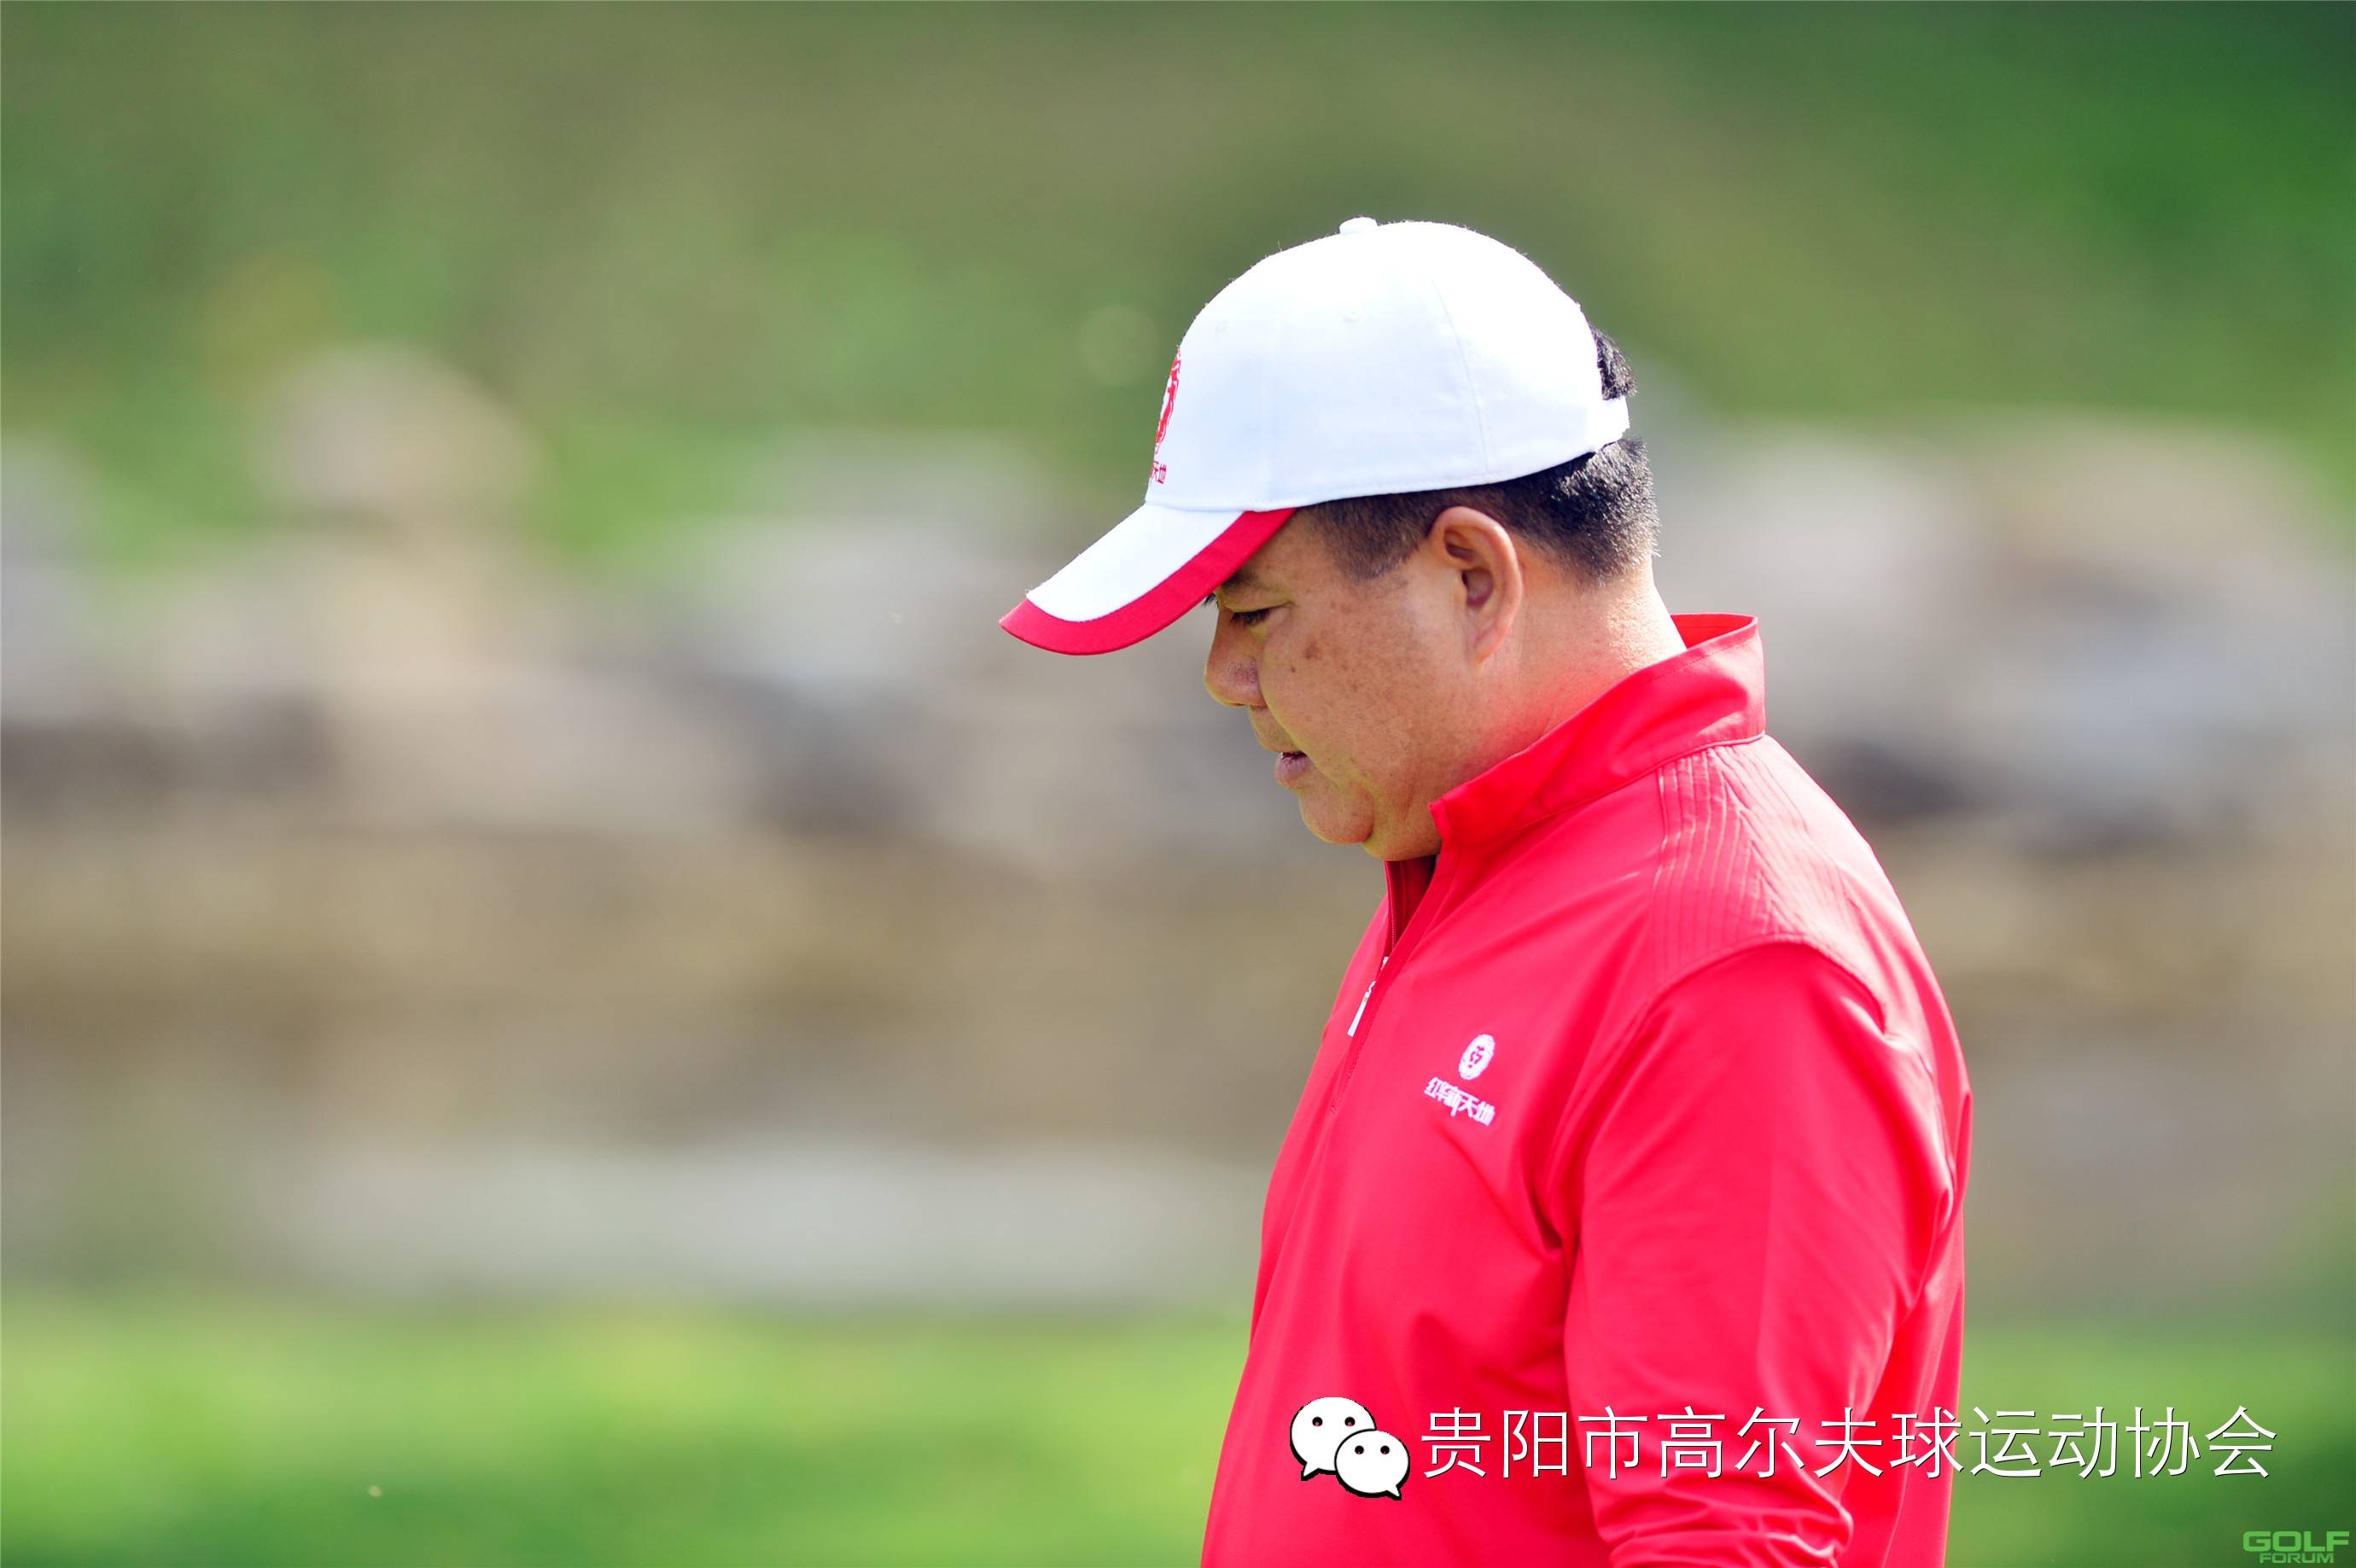 2014红华杯·贵州业余高尔夫锦标赛球员风采第九组李强宗胜 ...